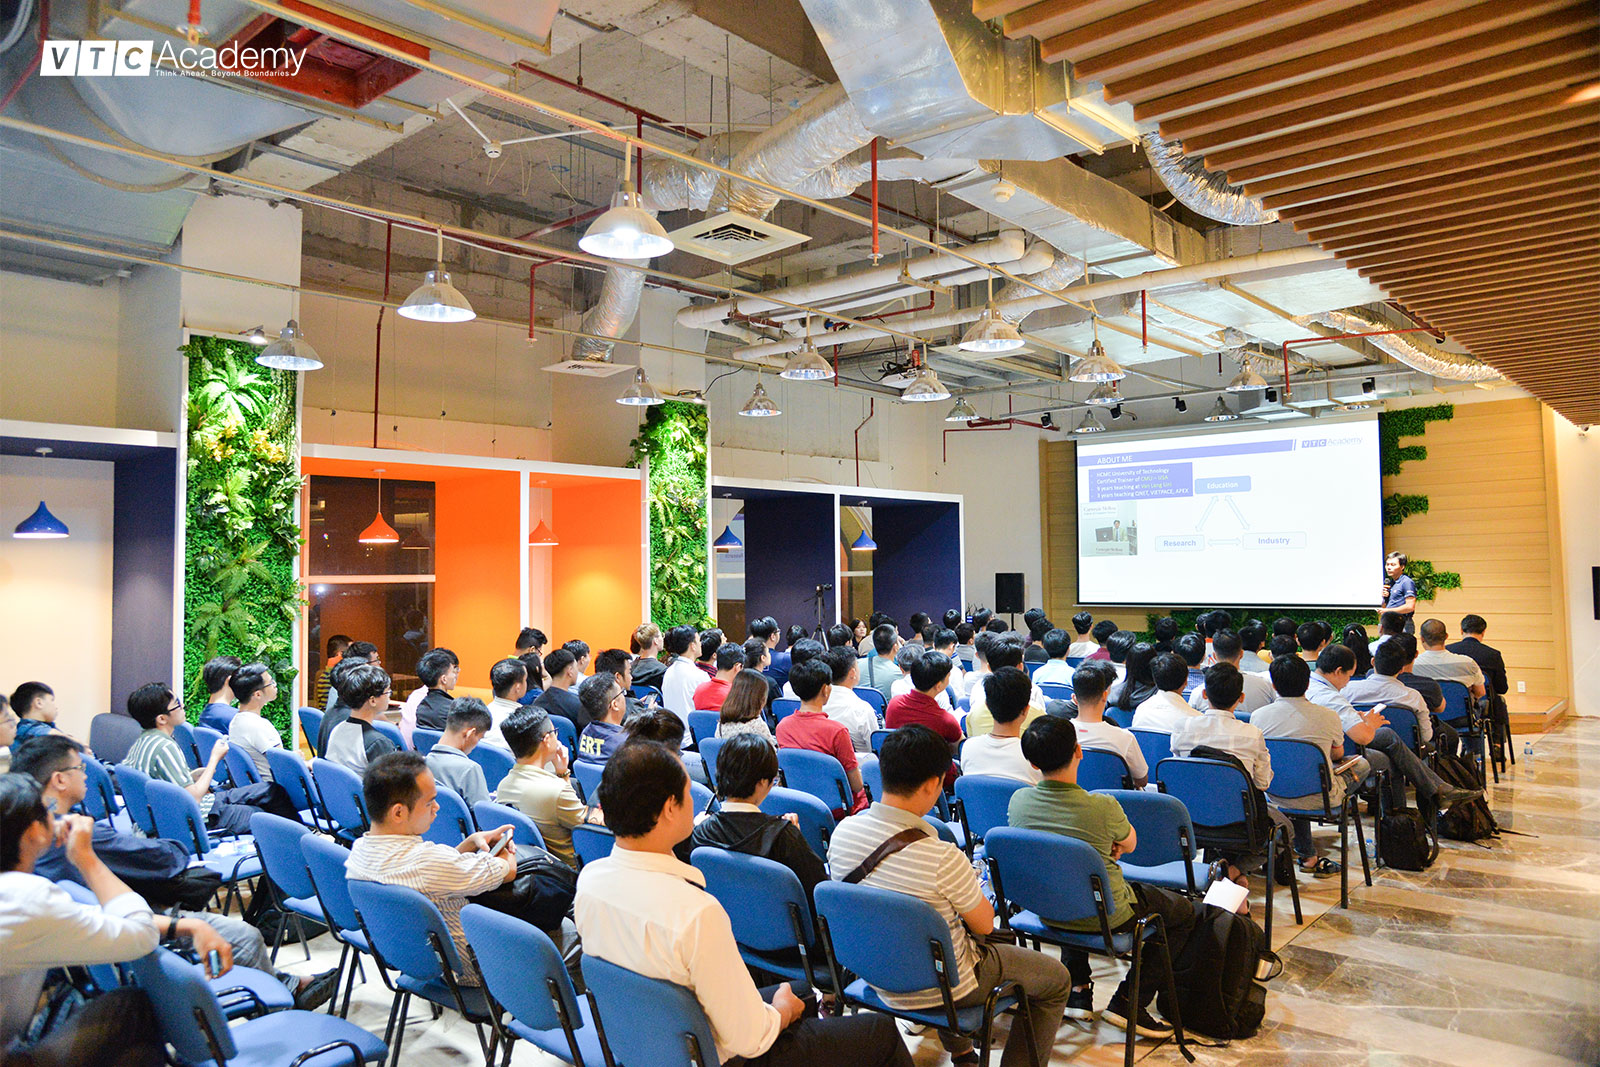 VTC Academy tổ chức hội thảo “AI Full-stack Development” tại TP.HCM